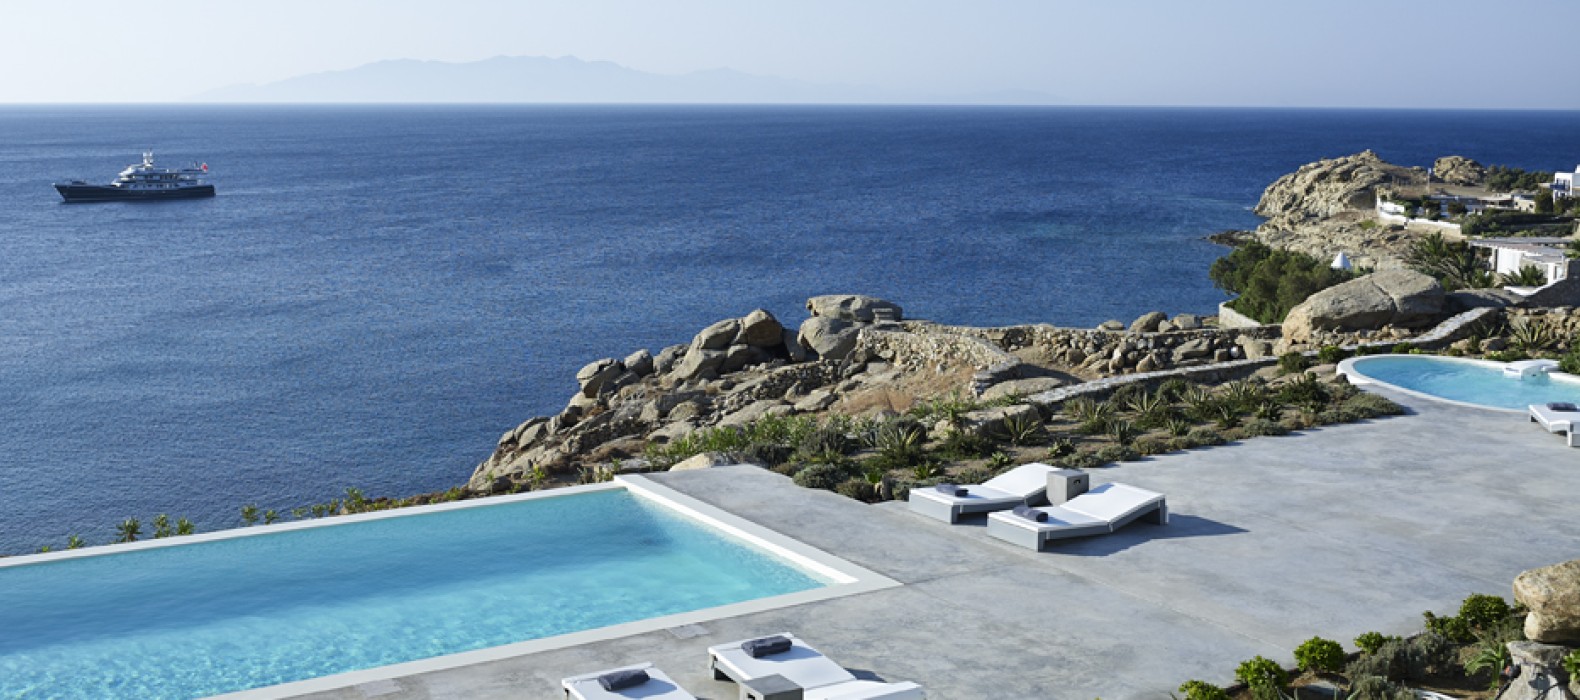 Exterior pool area of Villa Posidonia in Mykonos